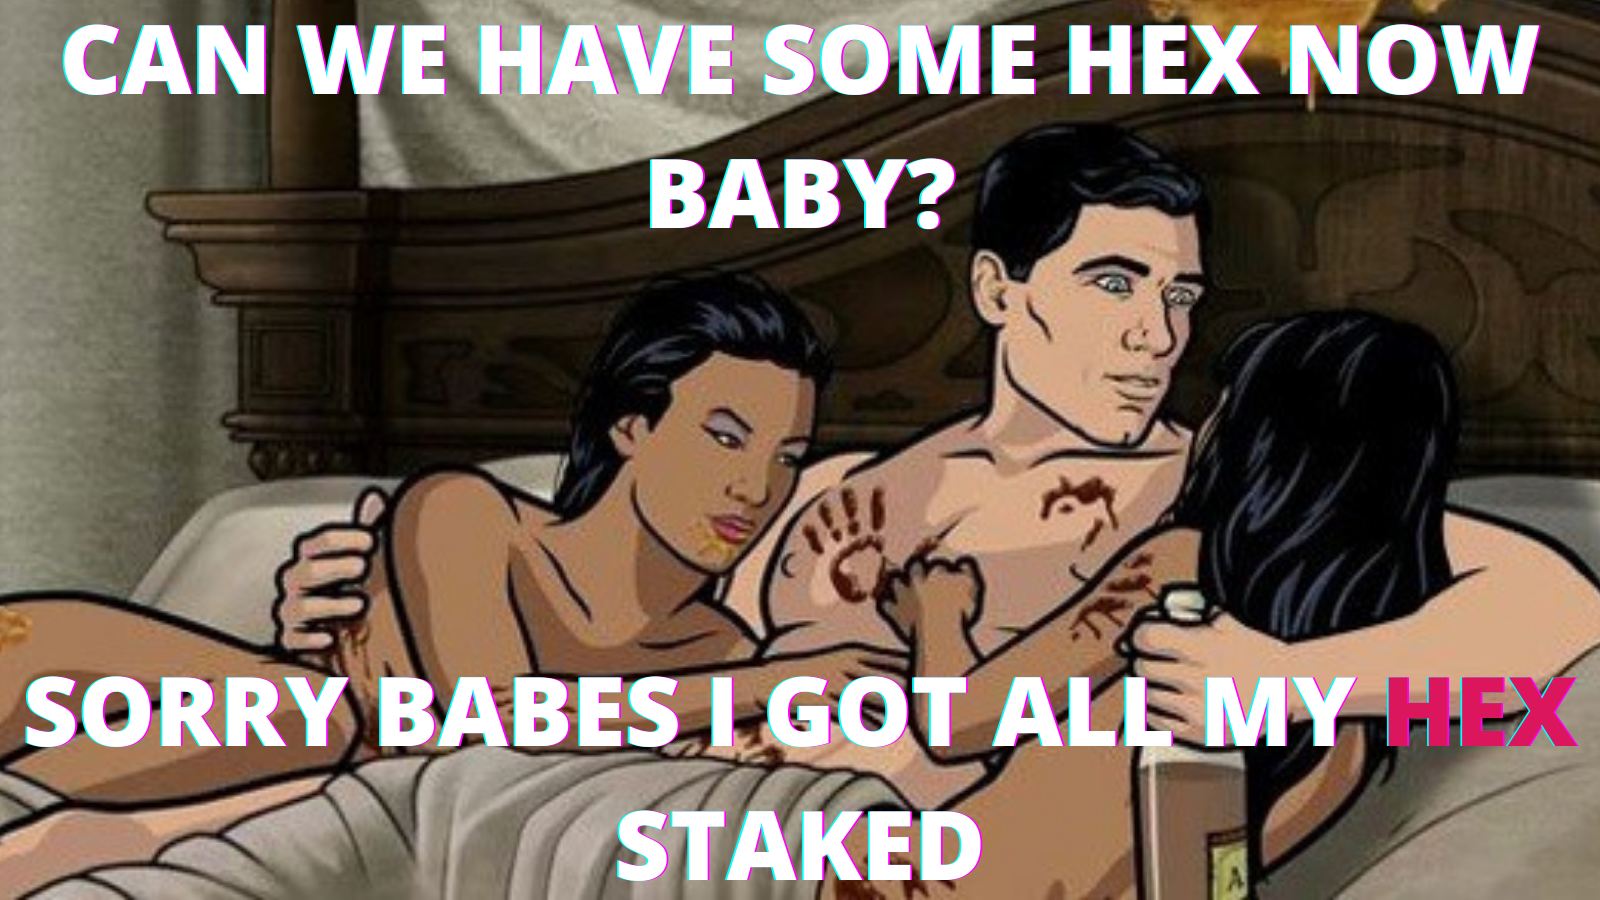 קיבלתי את ה-HEX Staked שלי - #HEX #Memes